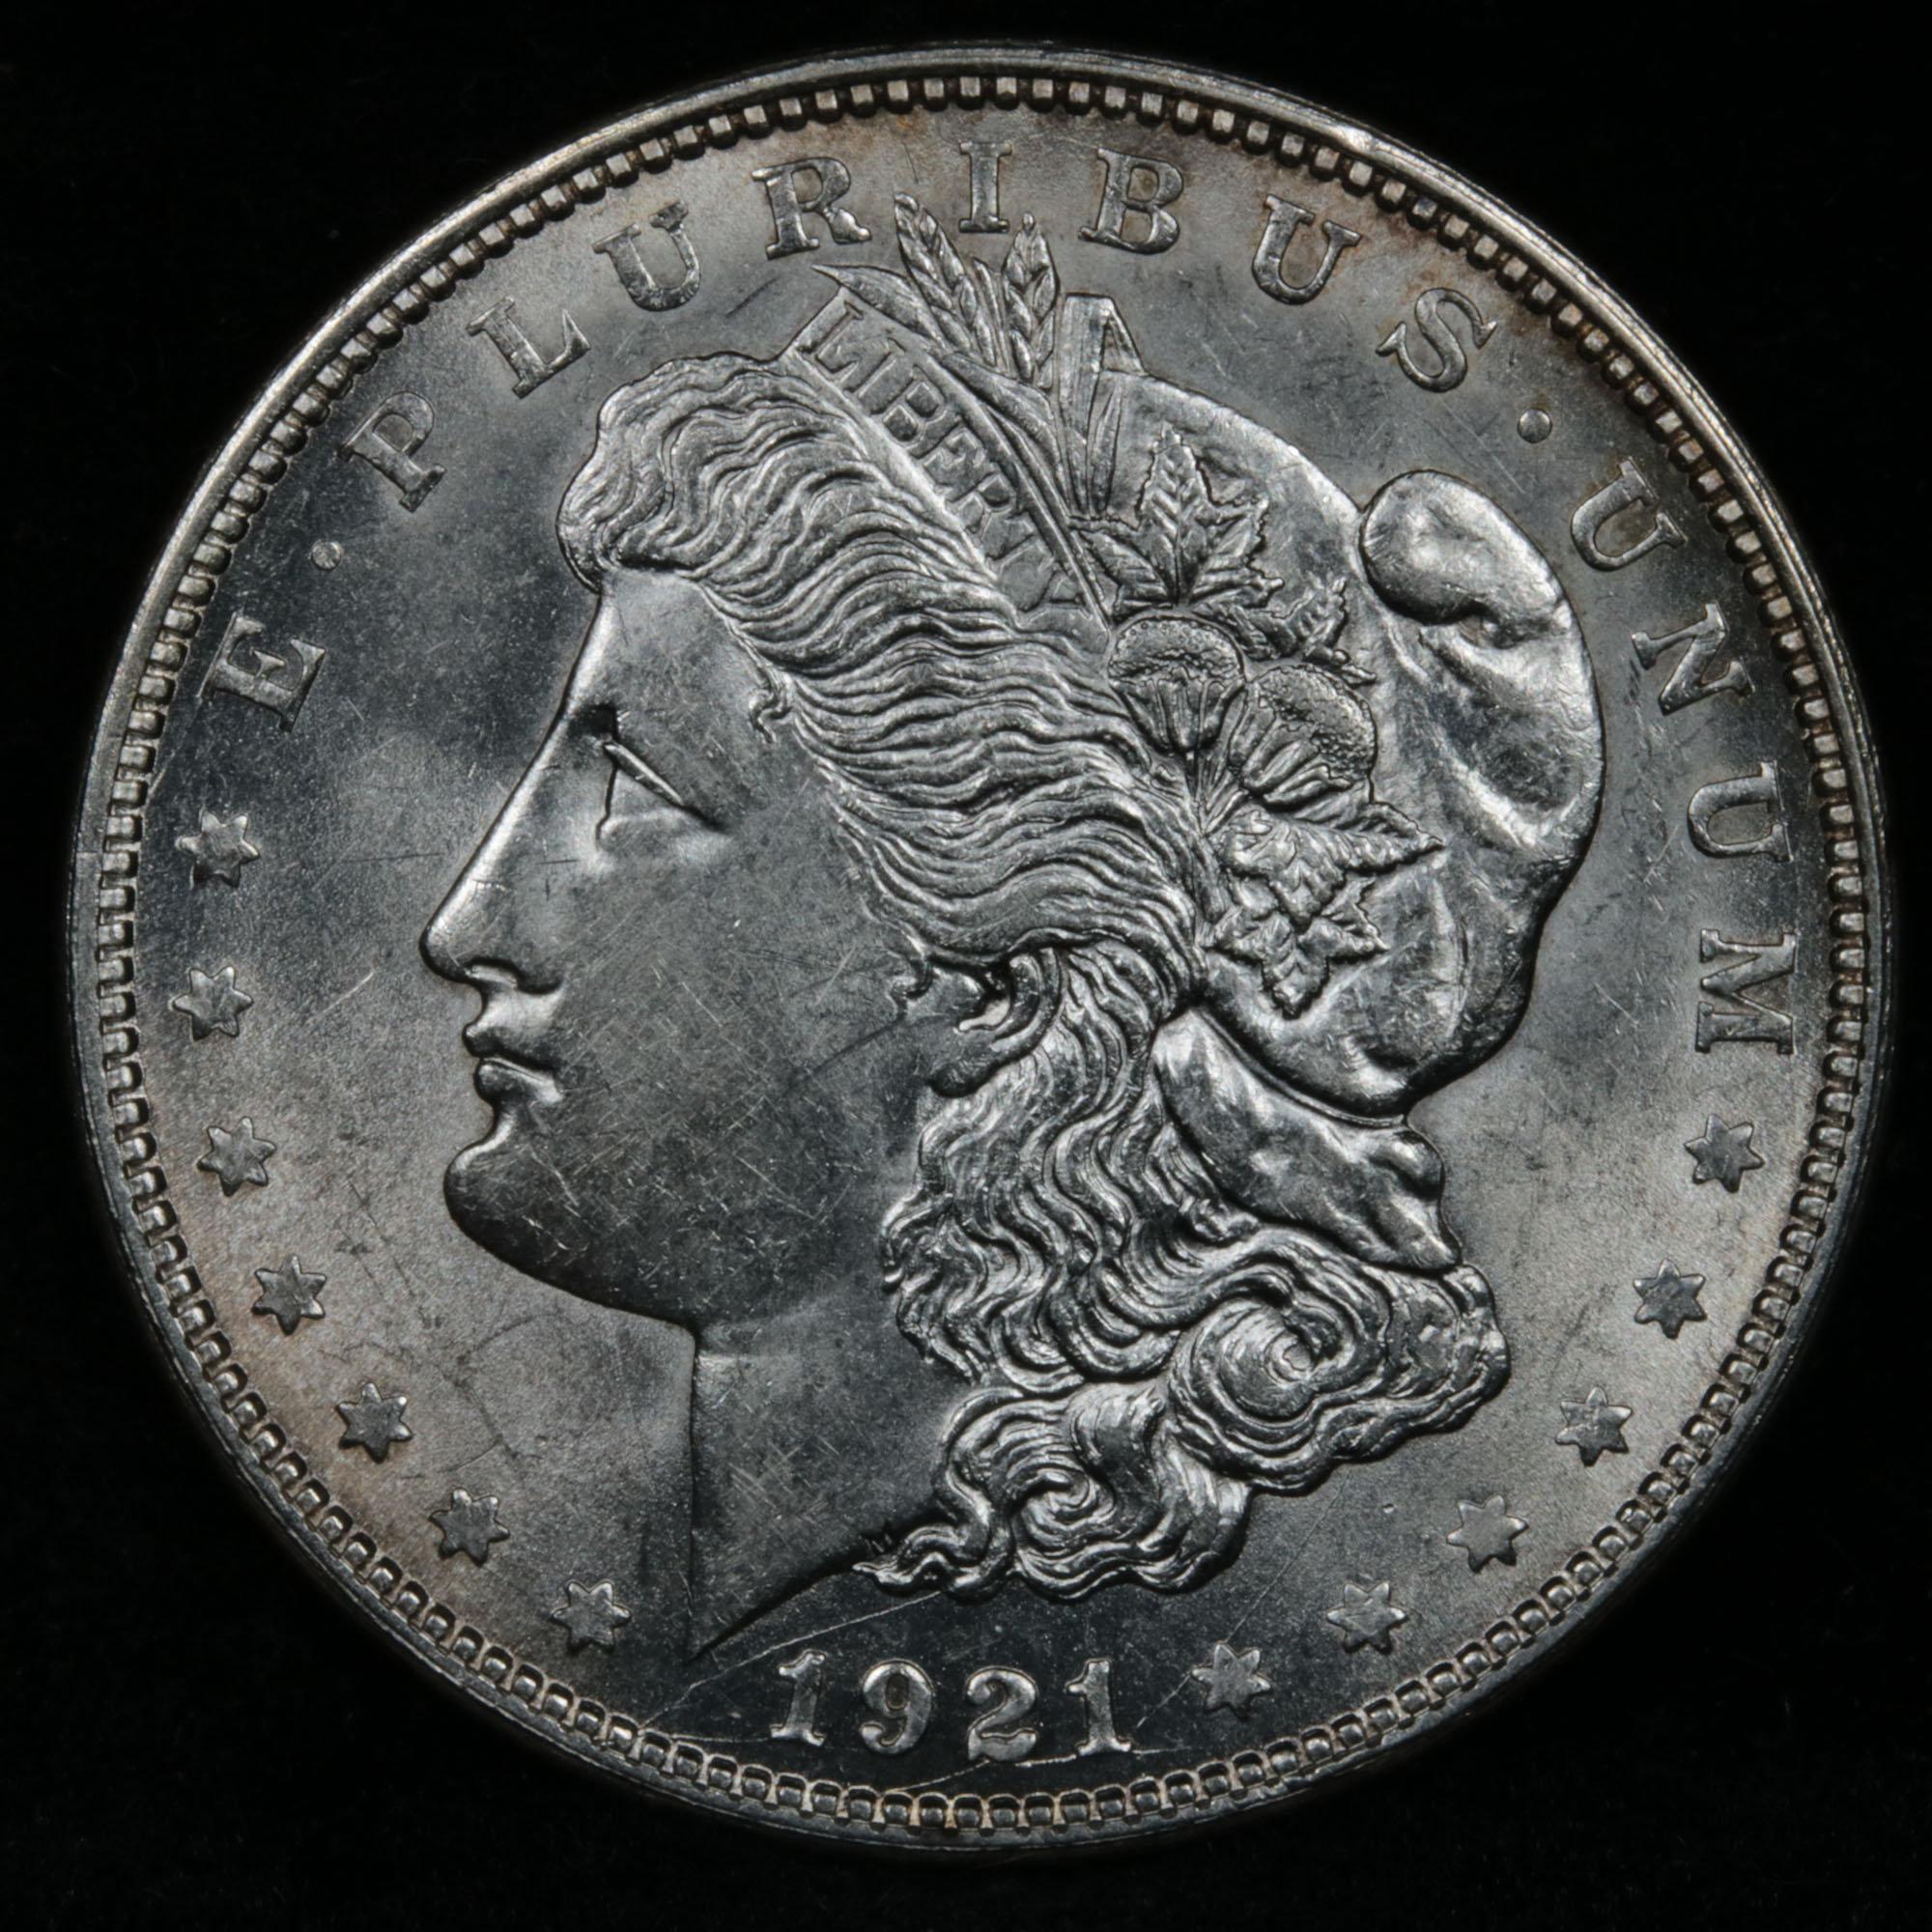 1921-d Morgan Dollar $1 Grades Select+ Unc